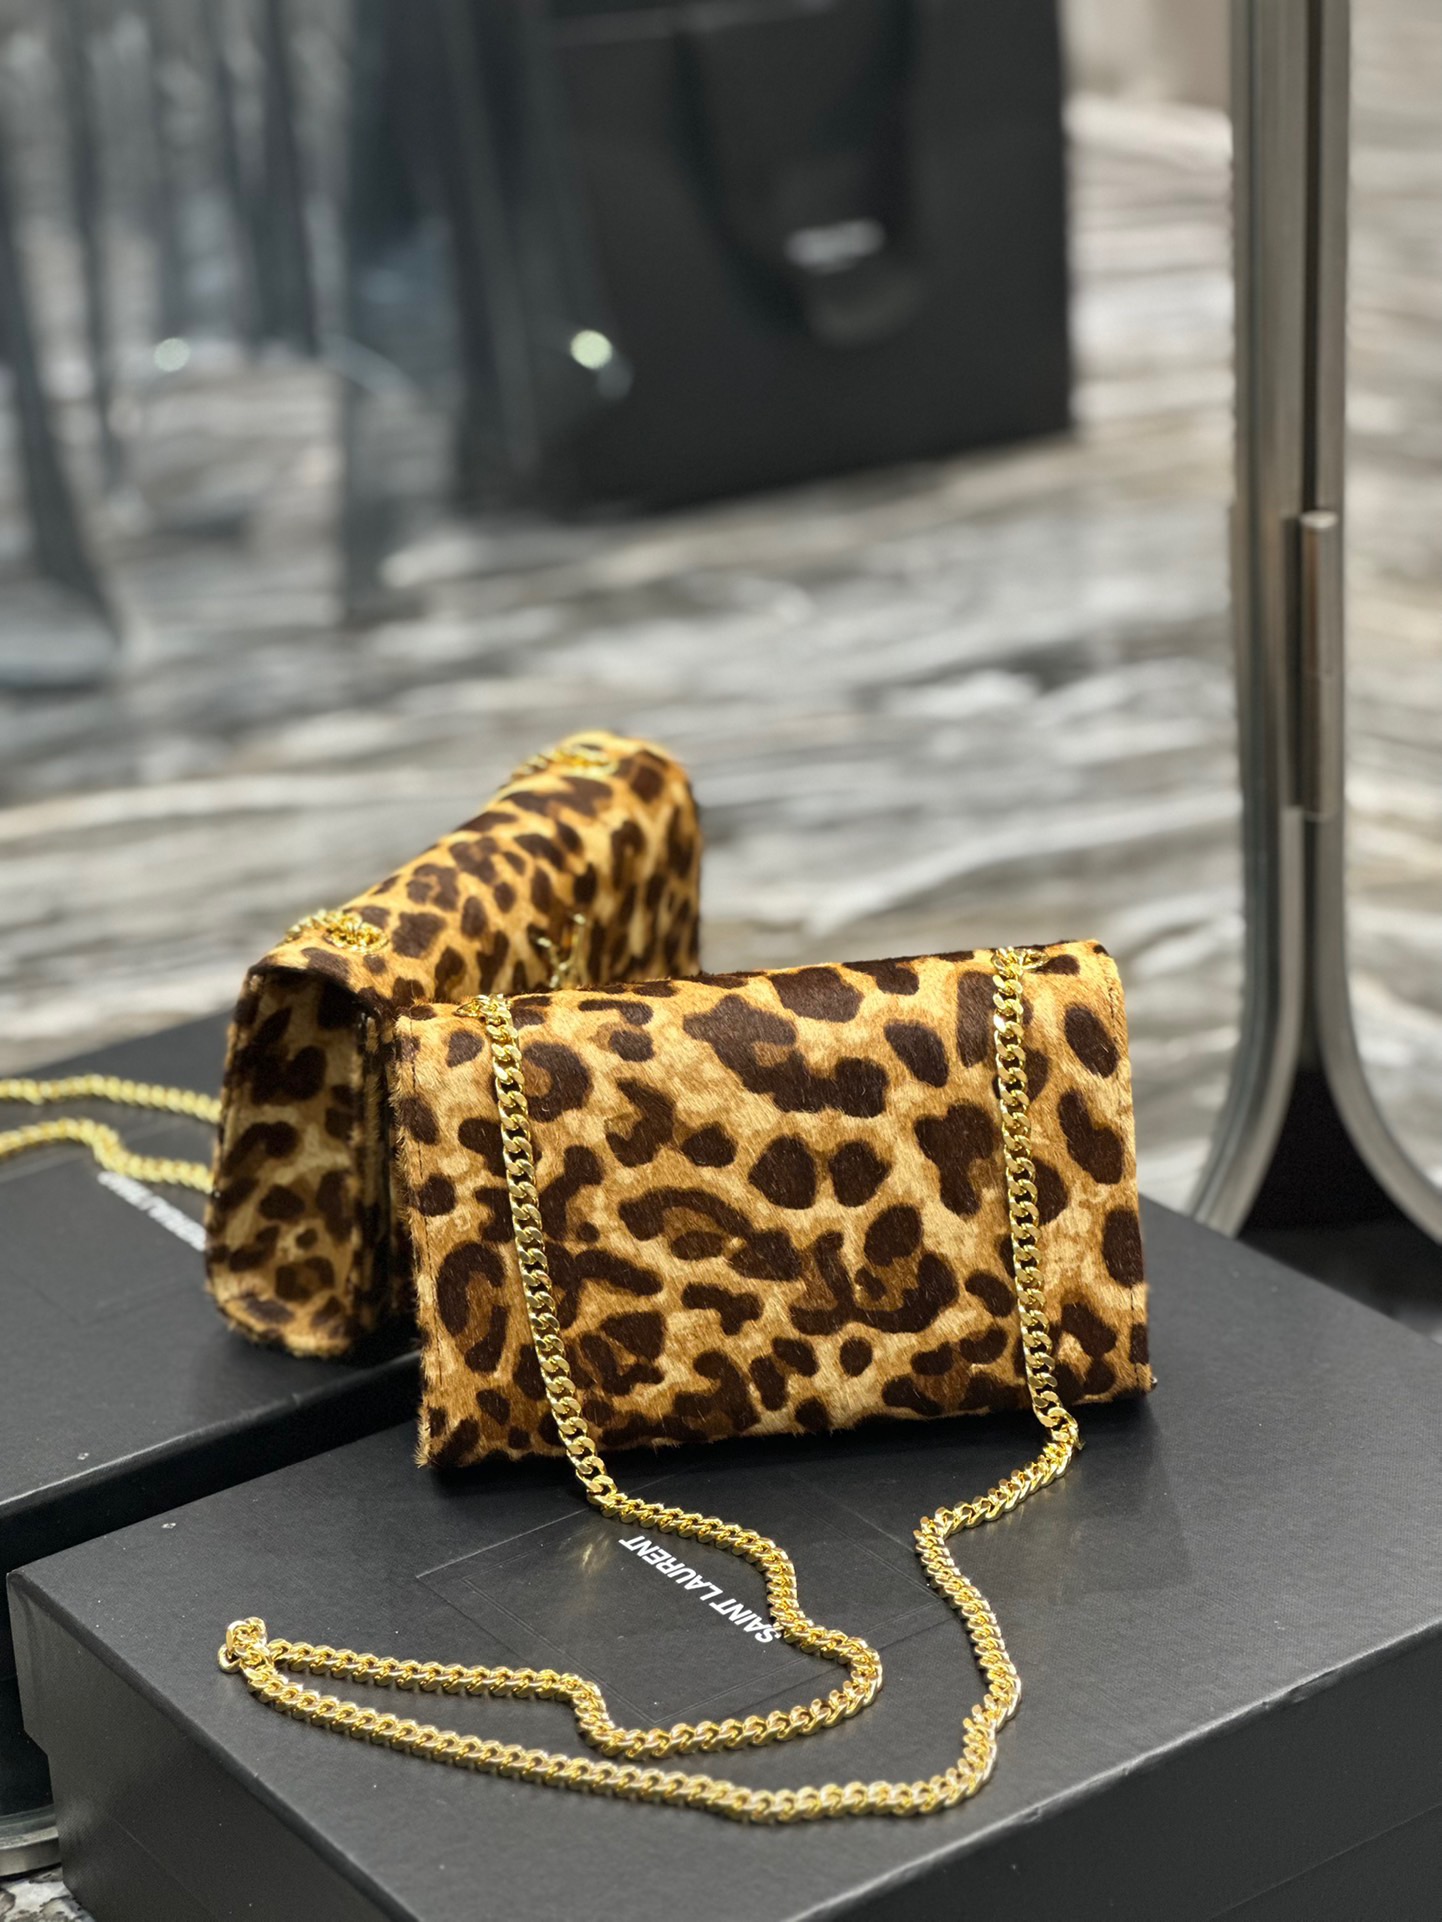 YSL Saint Laurent leopard print shoulder bag # 268785, cheap YSL Satchels, only $159!